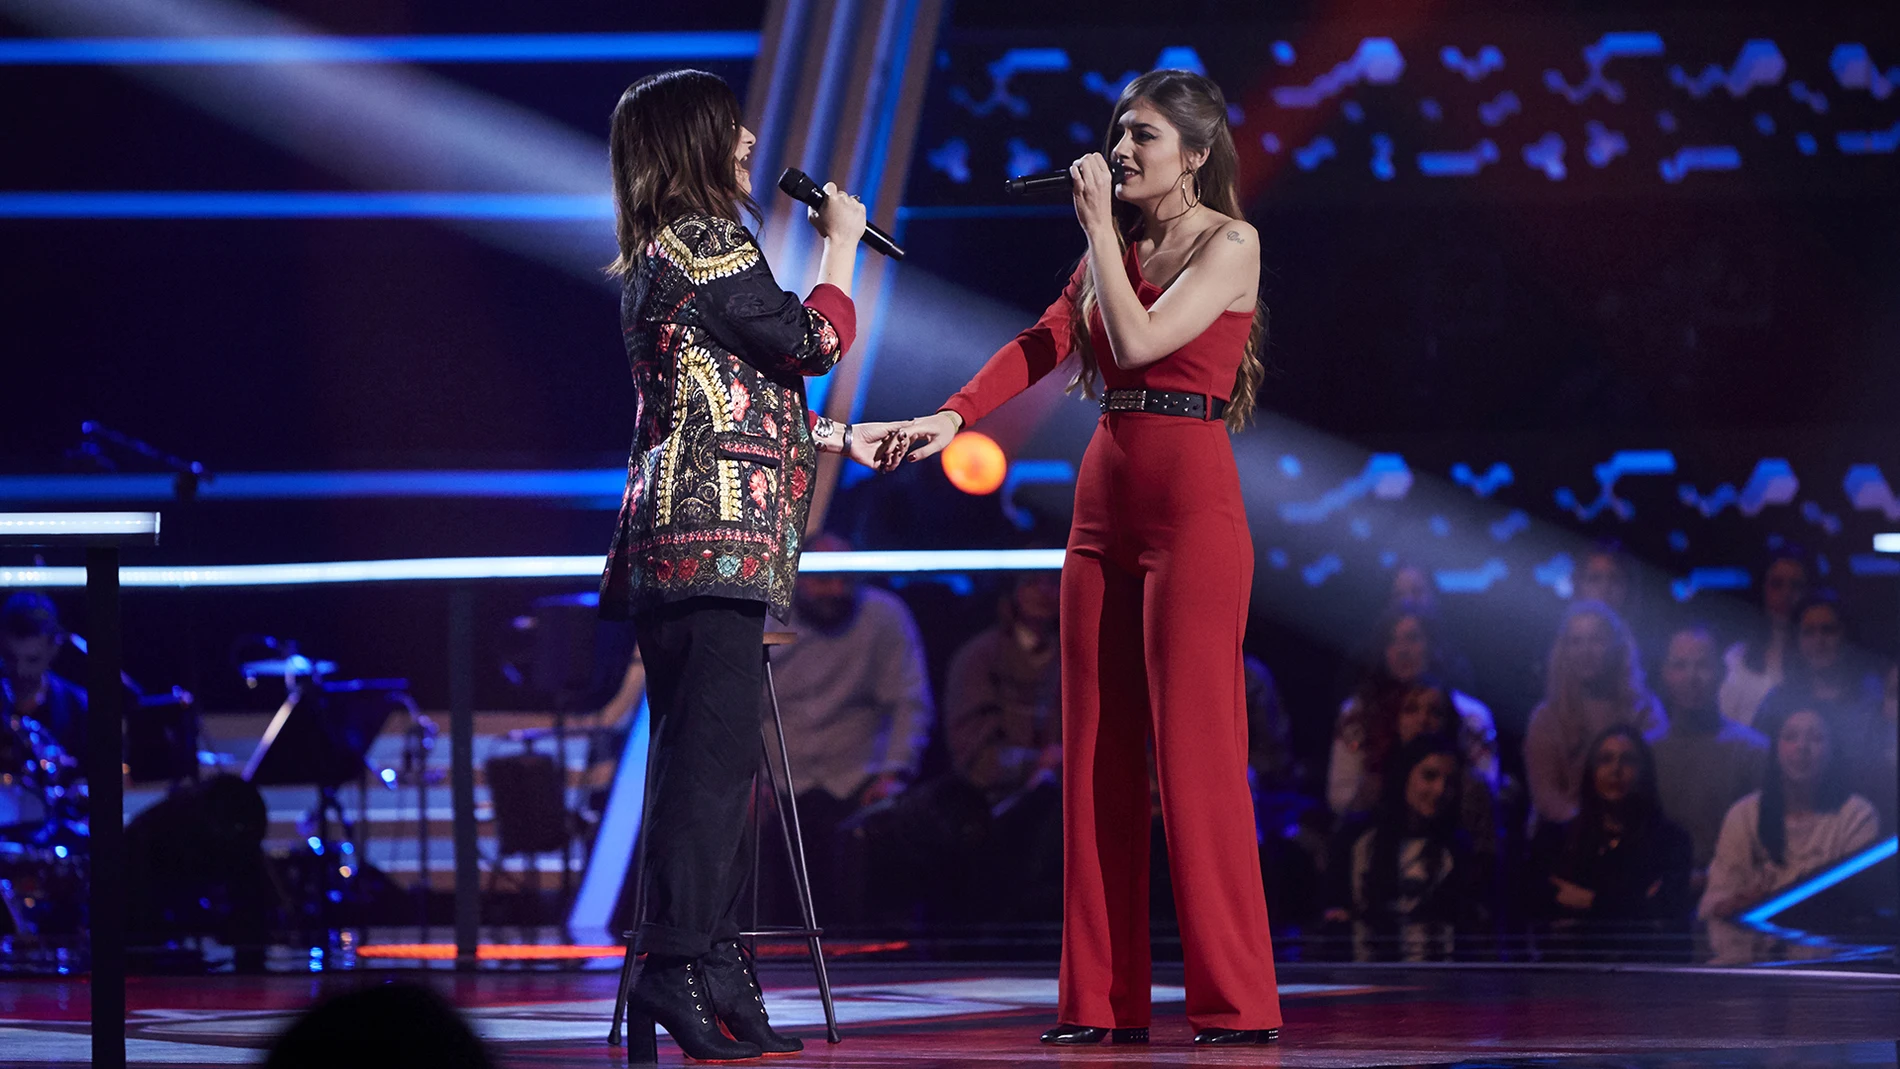 Laura Pausini y Cristina Montoya enamoran cantando juntas 'Nadie ha dicho' en los Asaltos de 'La Voz'